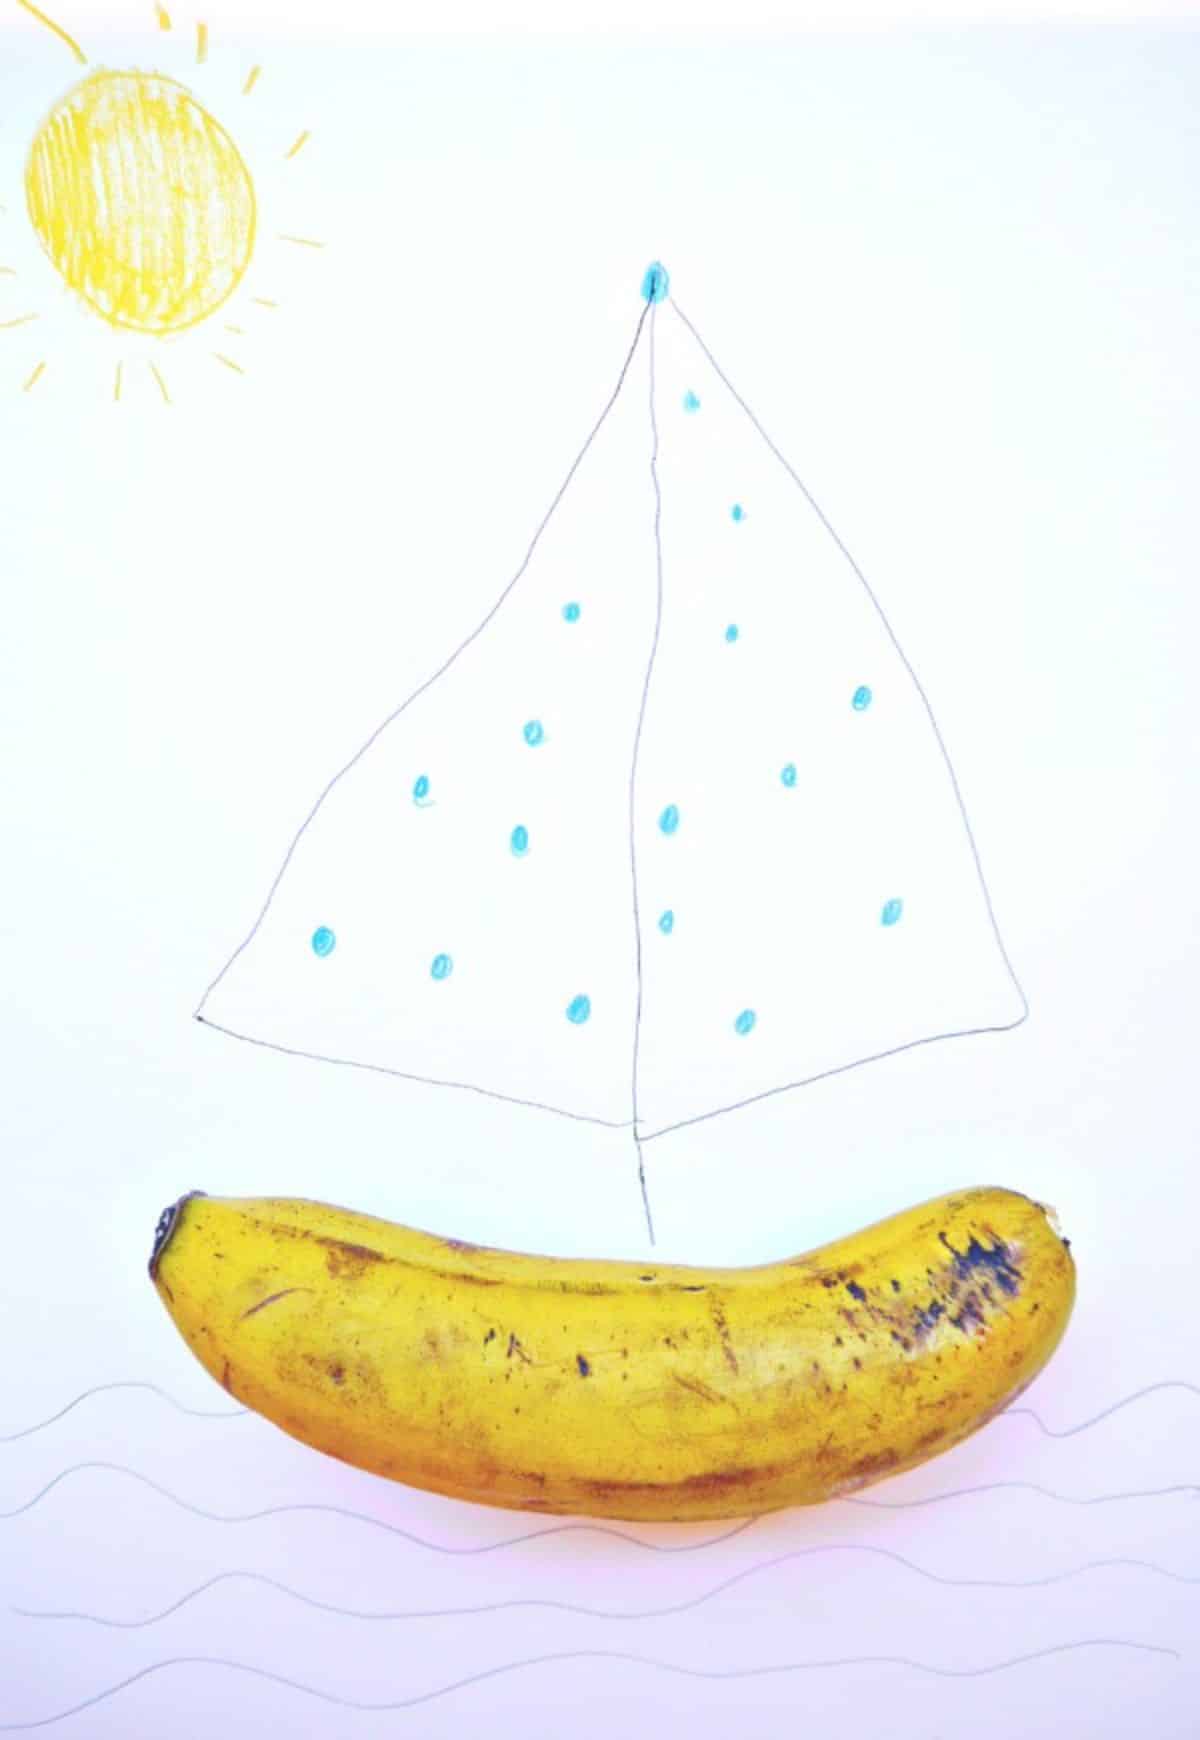 Banana boat vegetable drawing..